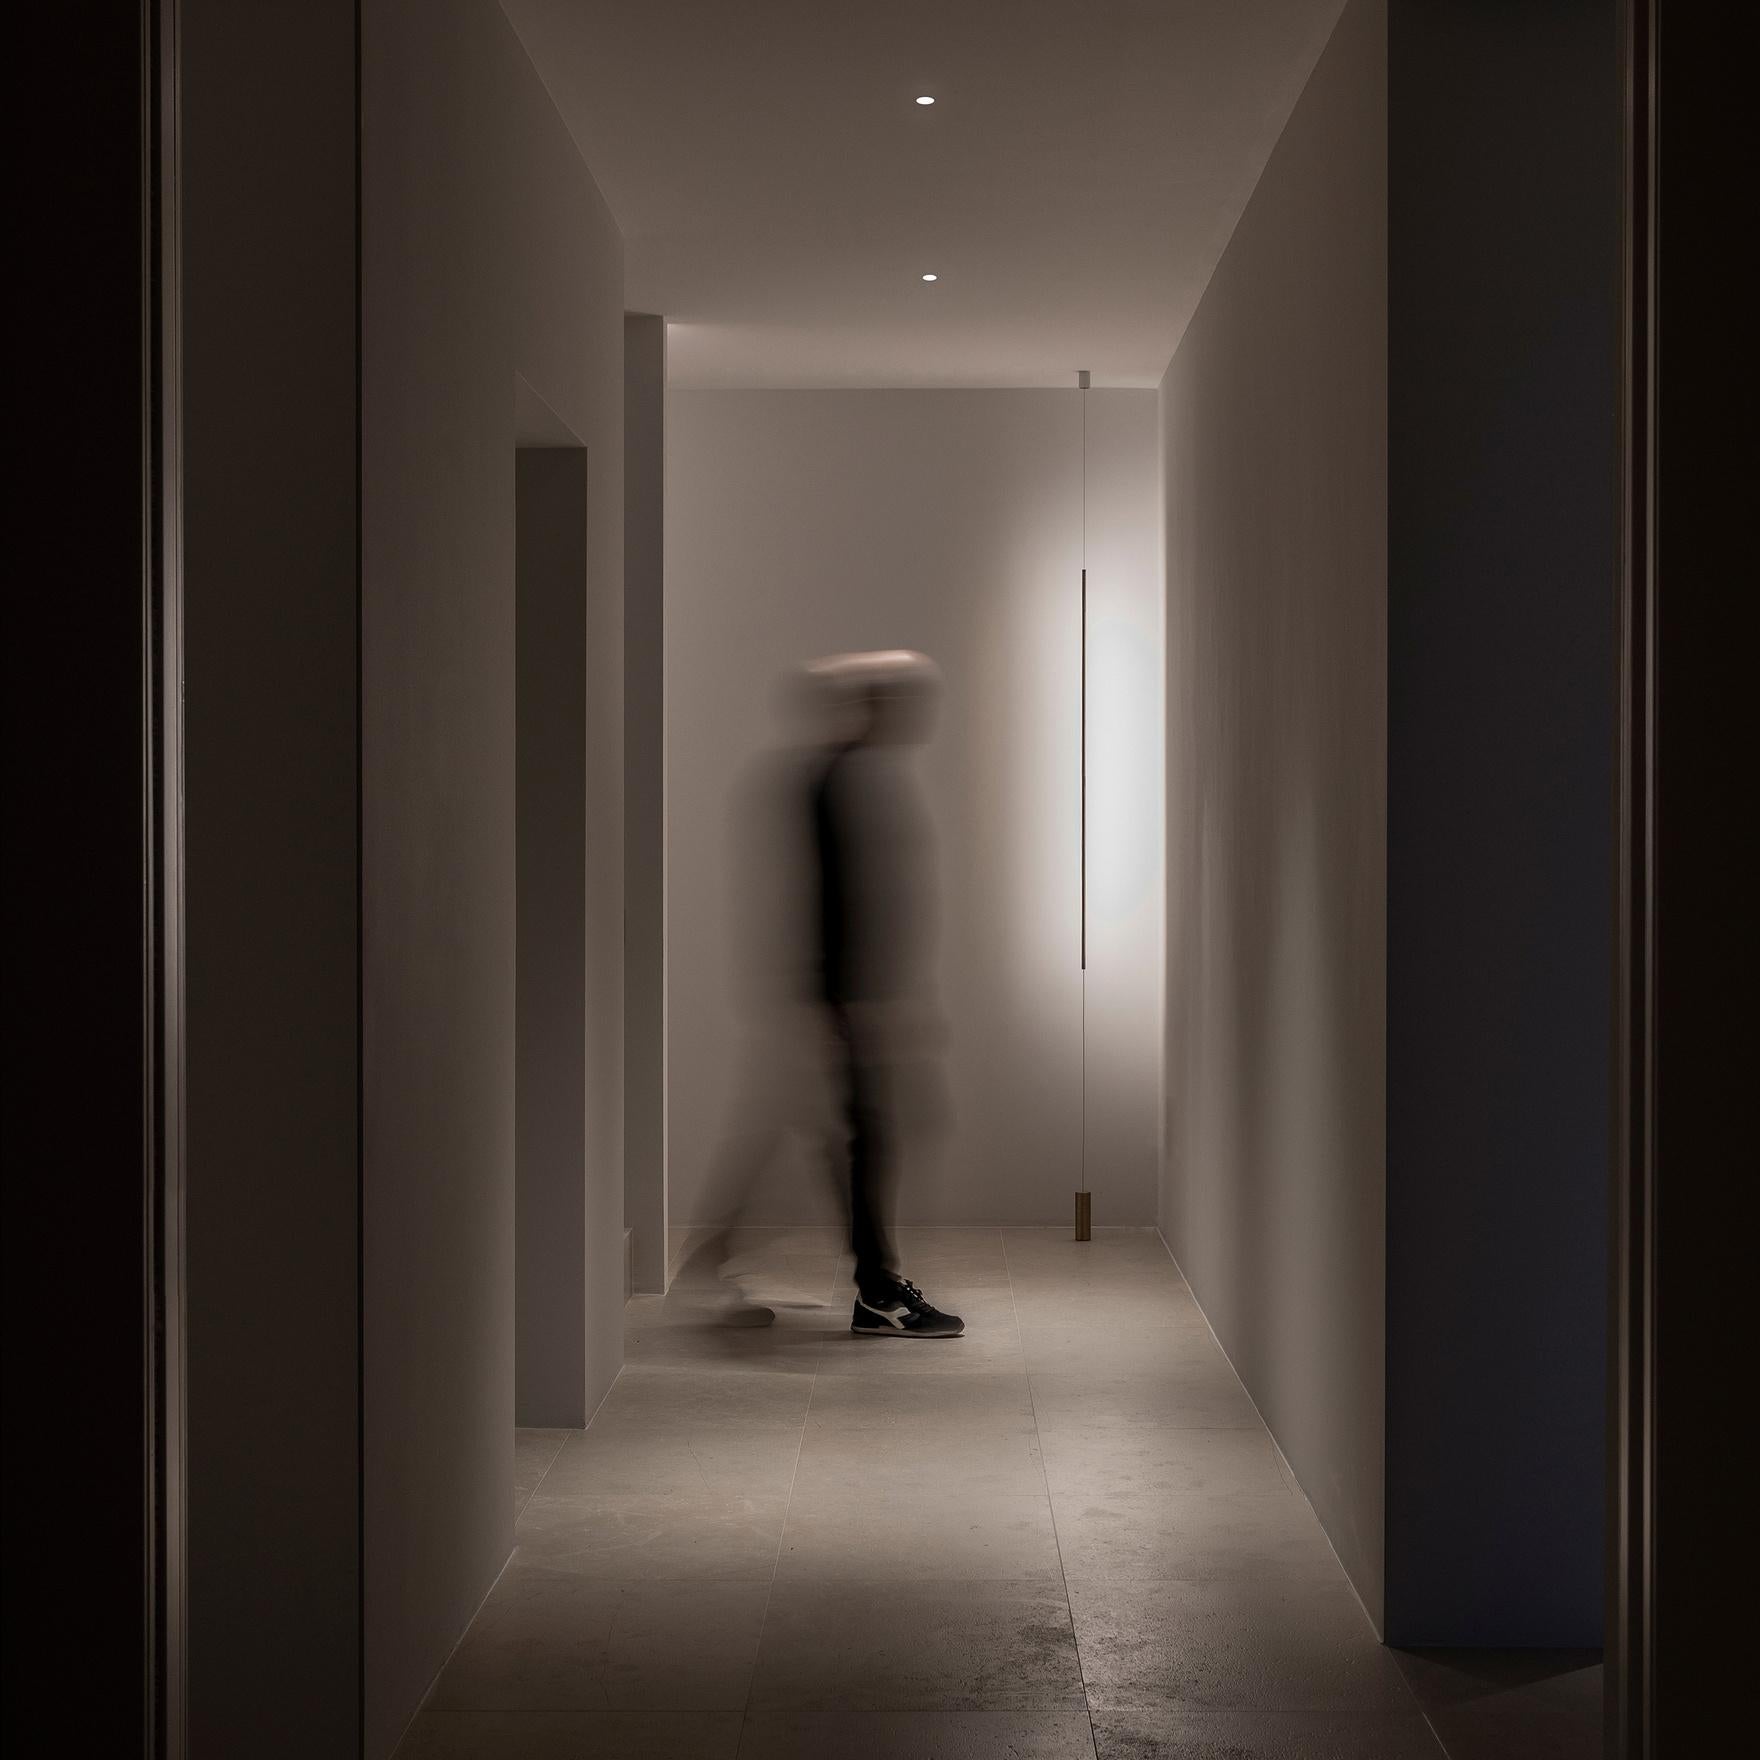 Eine Hommage an Alberto Giacometti und an seine dünnen Kollegen...
Eine Lampe zur Beleuchtung von Bildern, die mit einer normalen Steckdose betrieben wird.
Die Lampe hat ein verstellbares Licht und kann ausgerichtet werden.
Der Lampenbereich ist auf